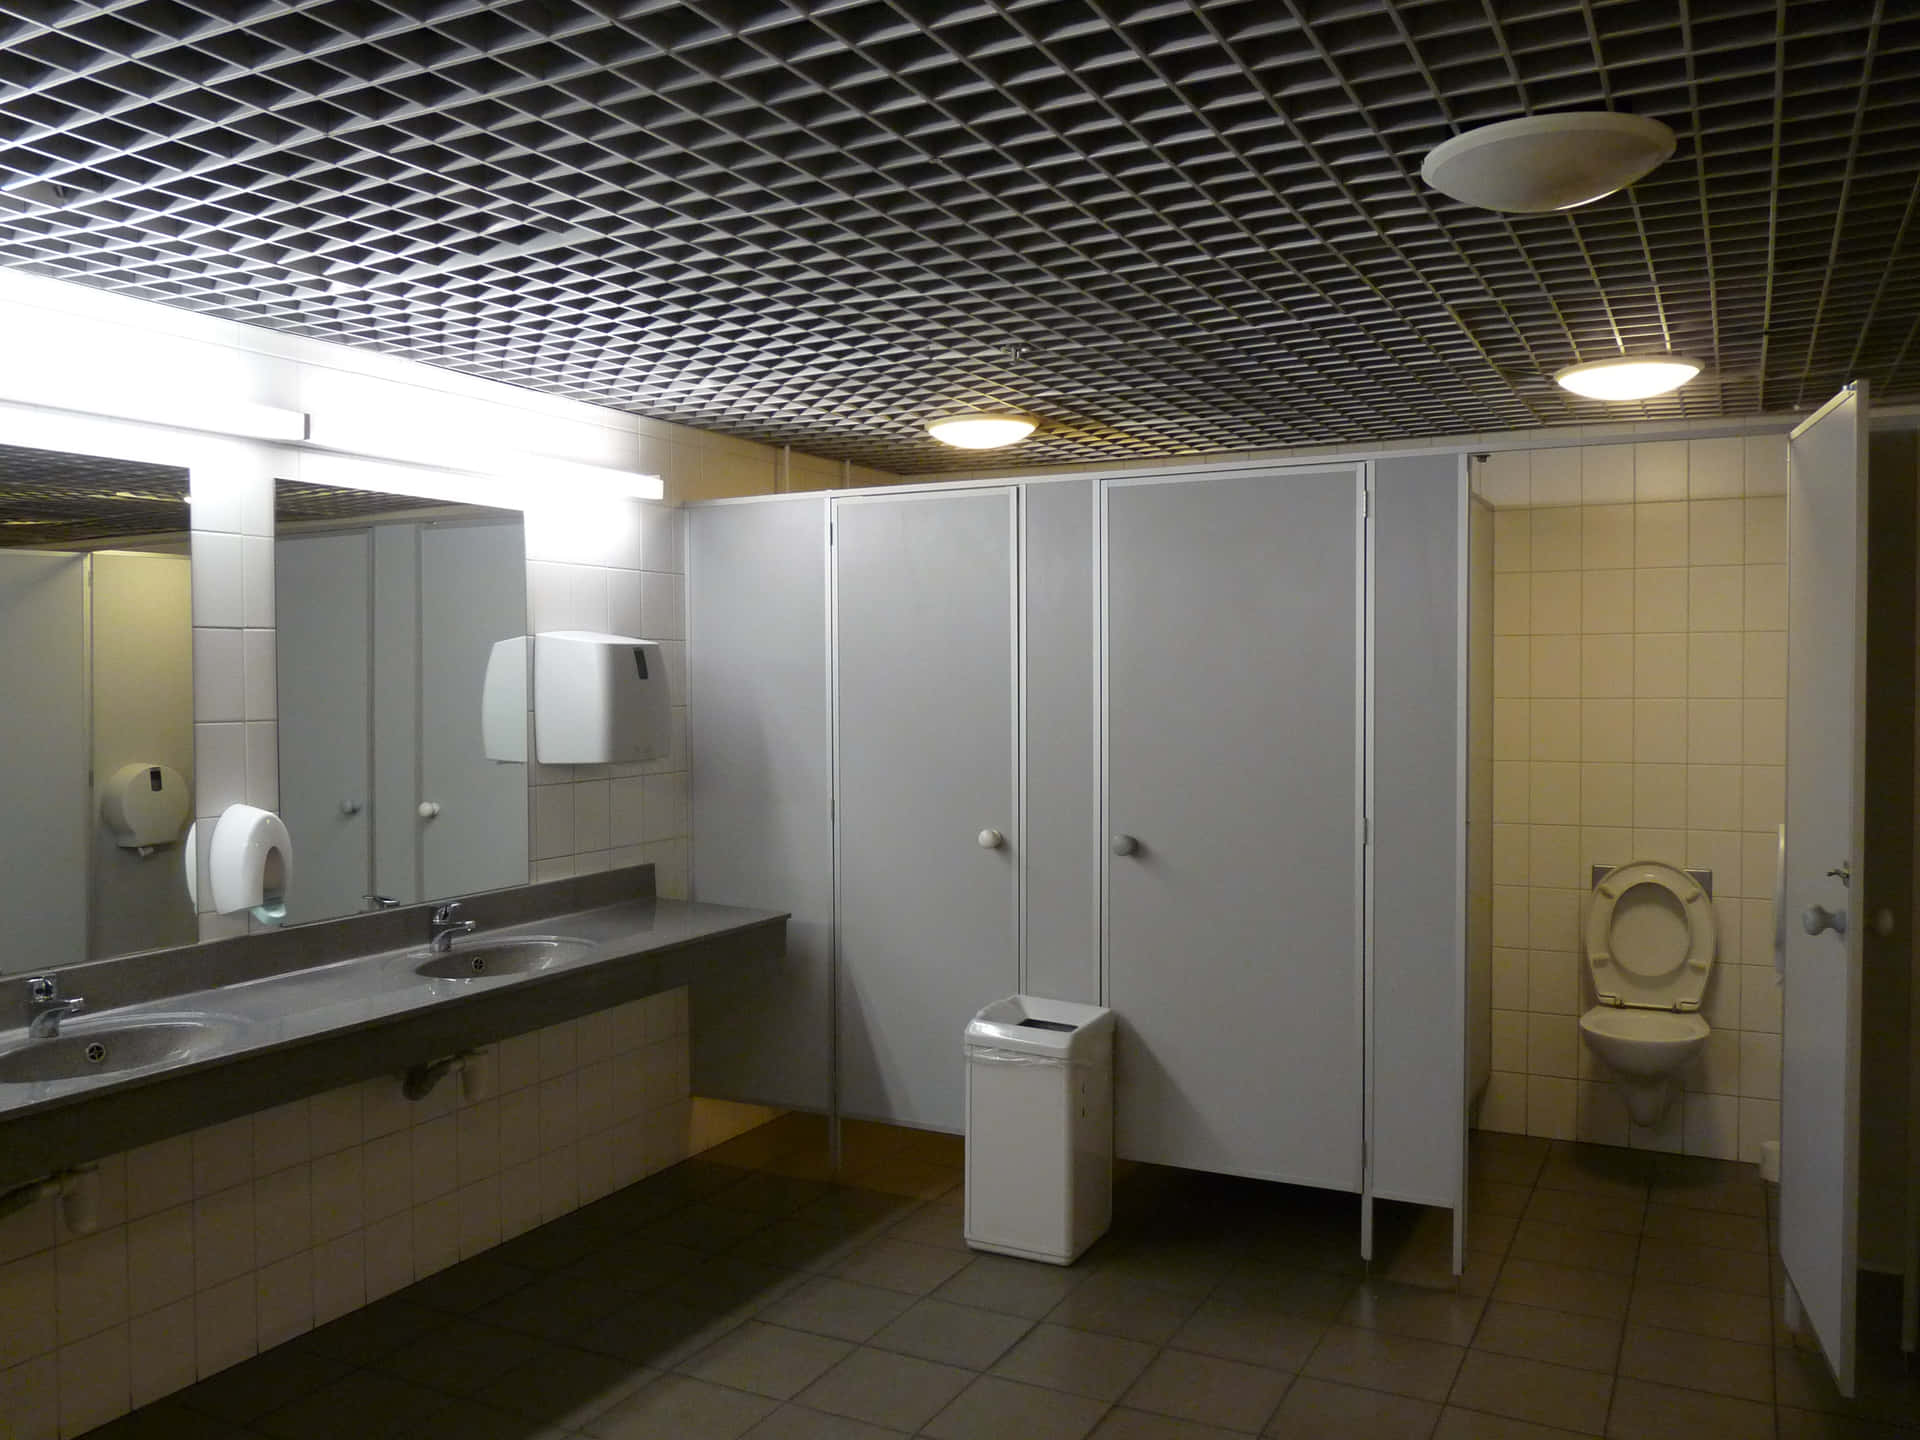 Förnyaditt Badrum Med En Stilren Och Modern Toalett.